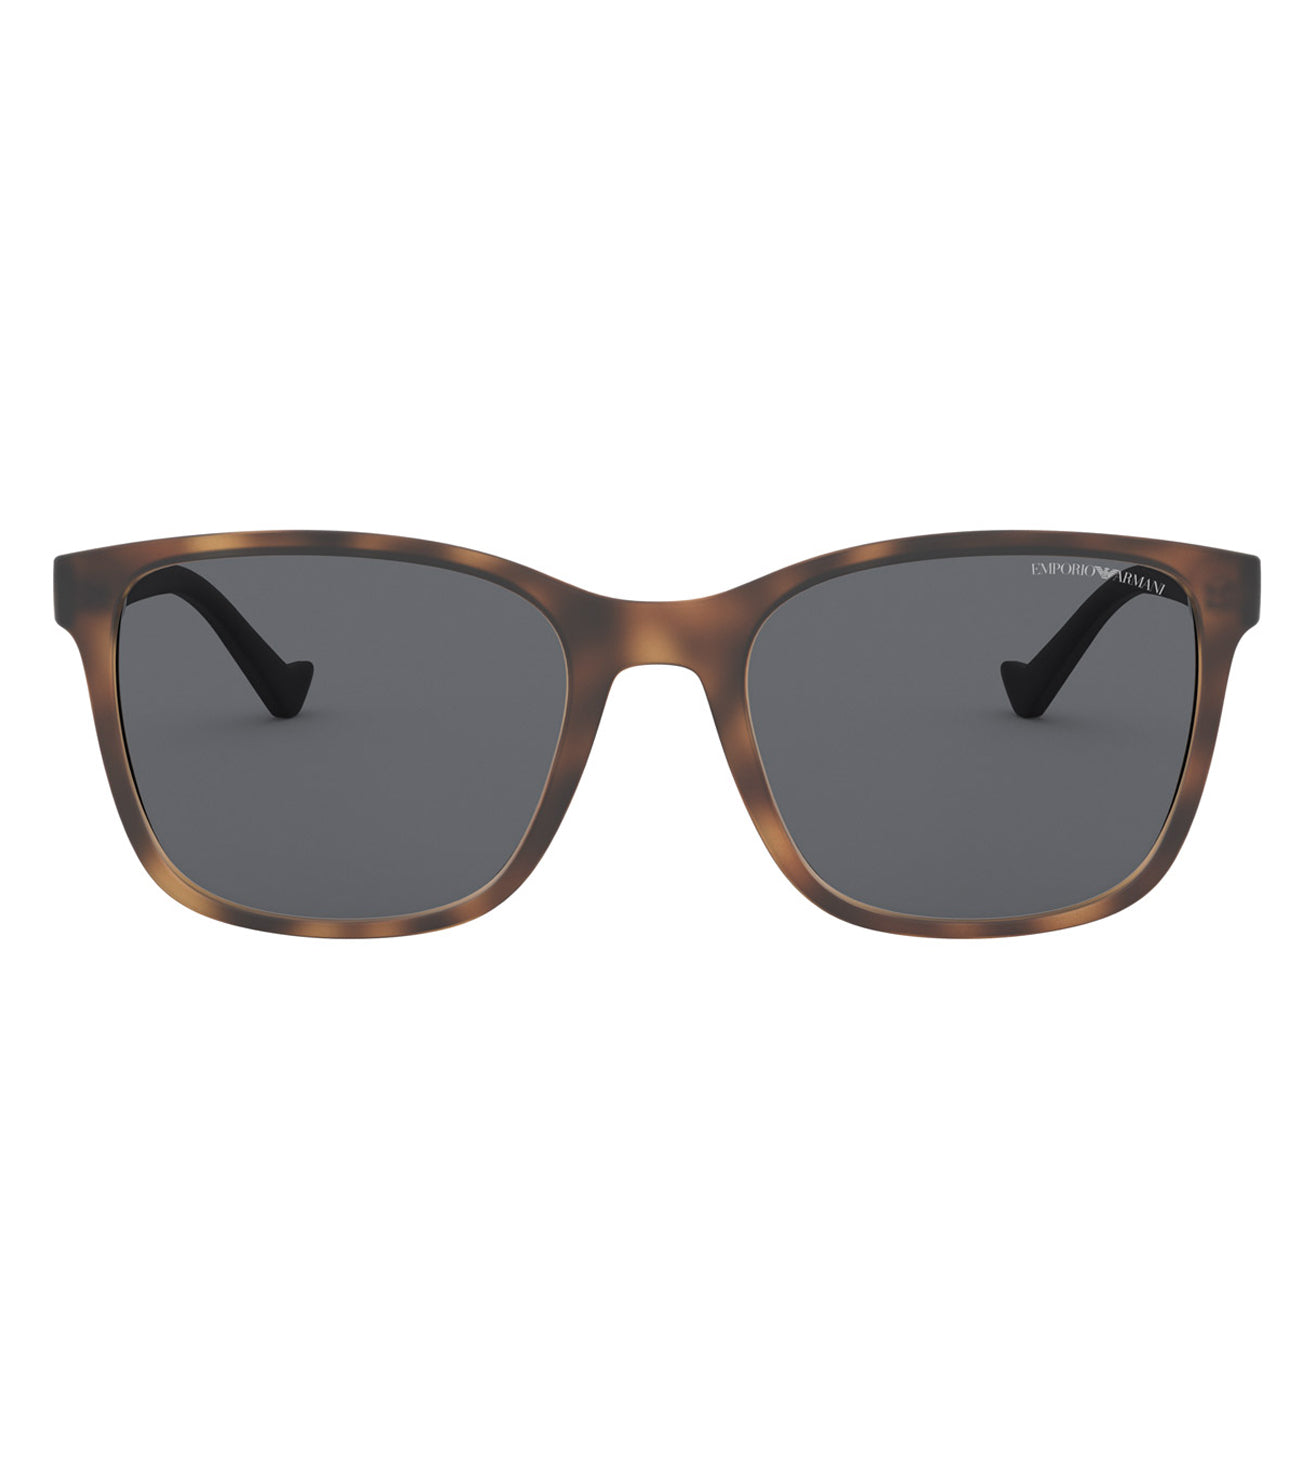 Emporio Armani Men's Grey Square Sunglasses